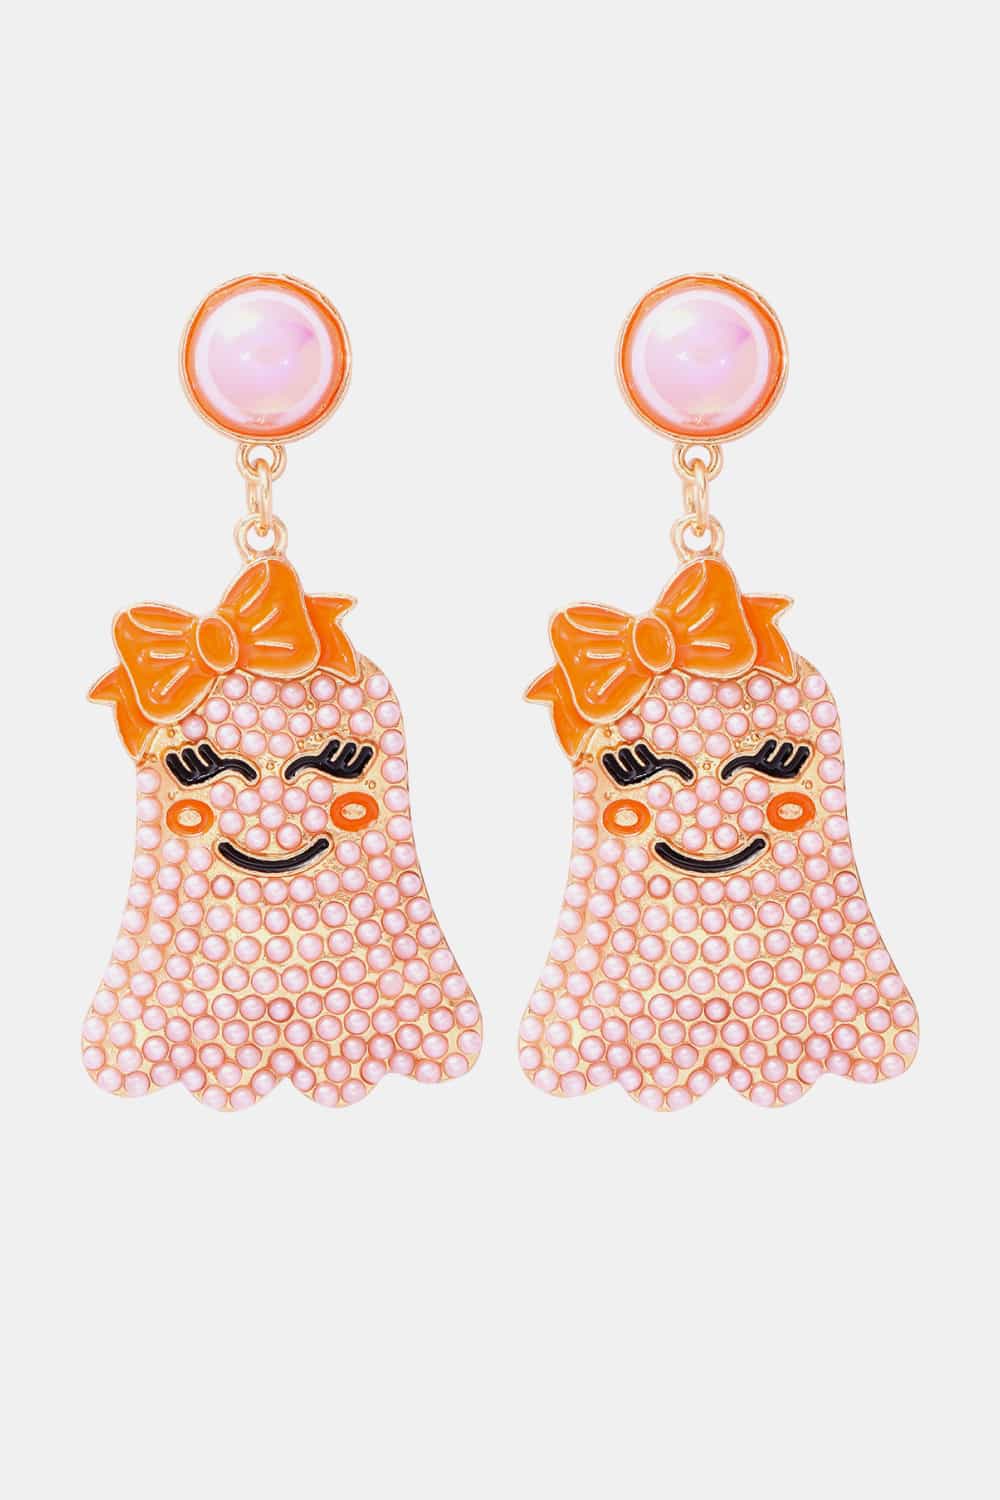 Smiling Ghost Shape Synthetic Pearl Earrings - Light Pink / One Size - Women’s Jewelry - Earrings - 9 - 2024